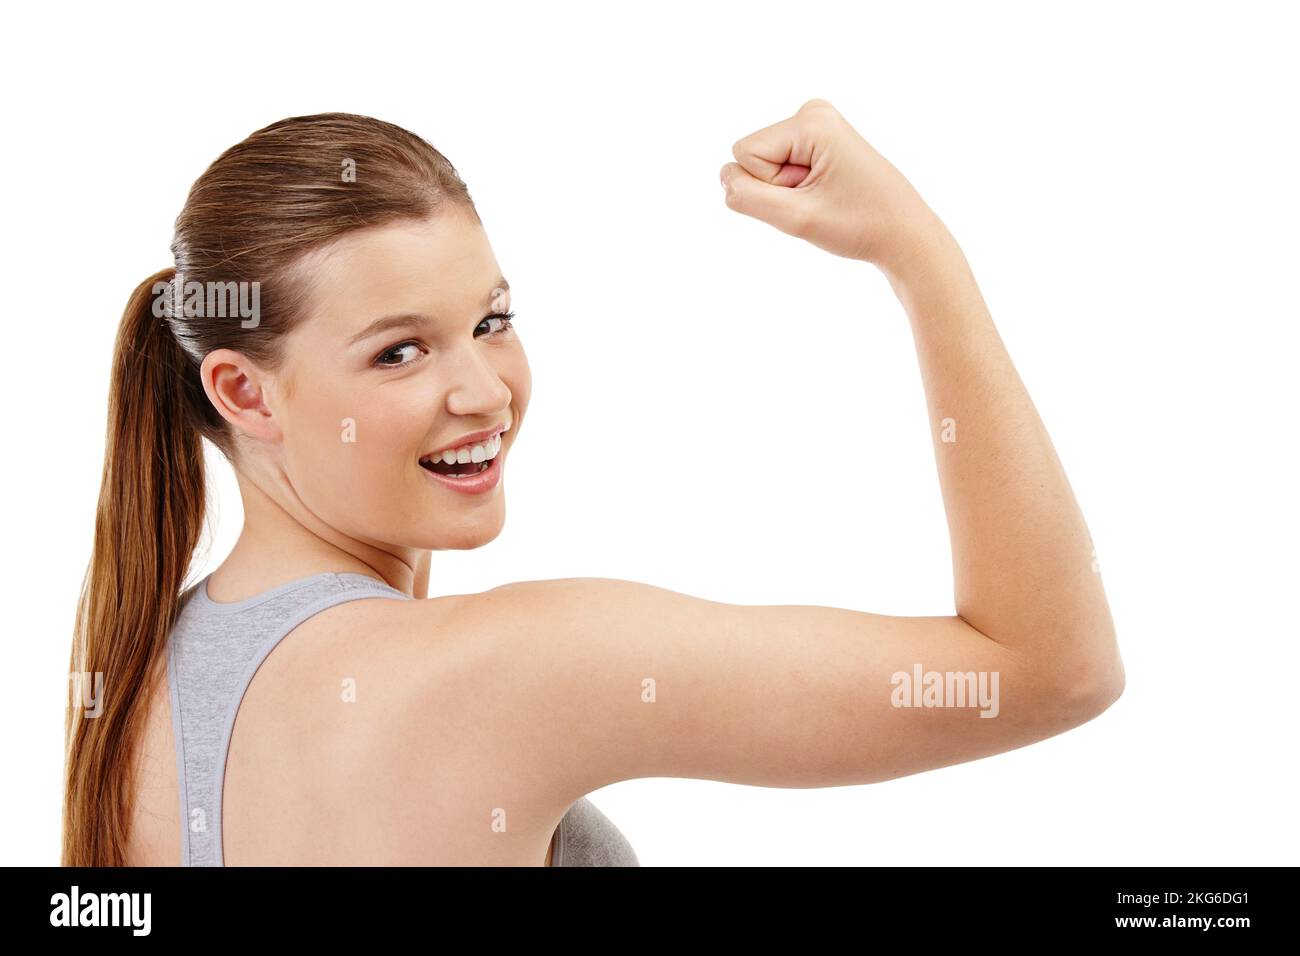 Guardare bene non si pensa. Una ragazza adolescente che controlla i suoi muscoli del bicep dopo un workout. Foto Stock